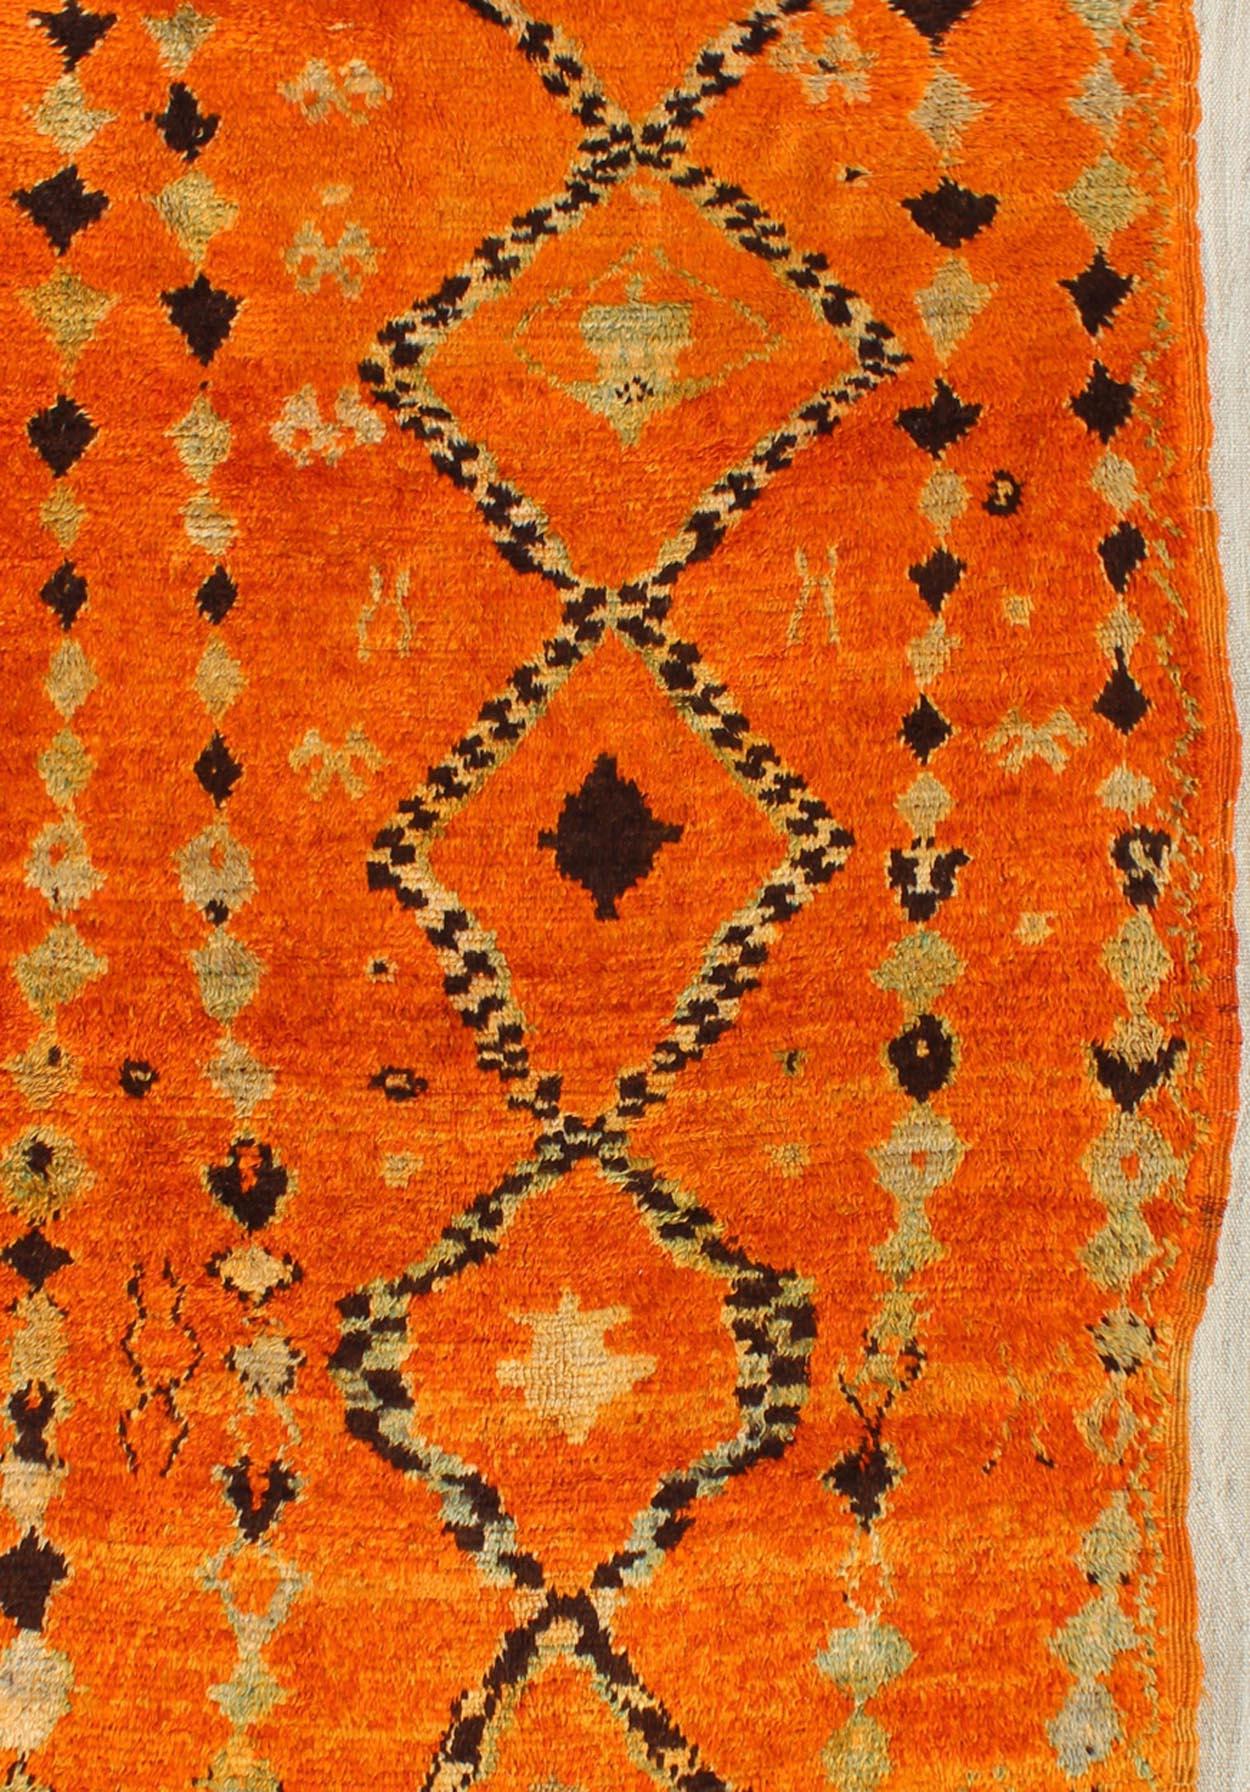 Marokkanischer Vintage-Teppich im Stammes-Design in Rot, Orange, Anthrazit, Elfenbein, Teppich BDS-2100, Keivan Woven Arts / Herkunftsland / Art: Marokko / Stammeskunst, um 1940.

Marokkanische Beni-Mkild-Teppiche sind Raritäten aus verschiedenen